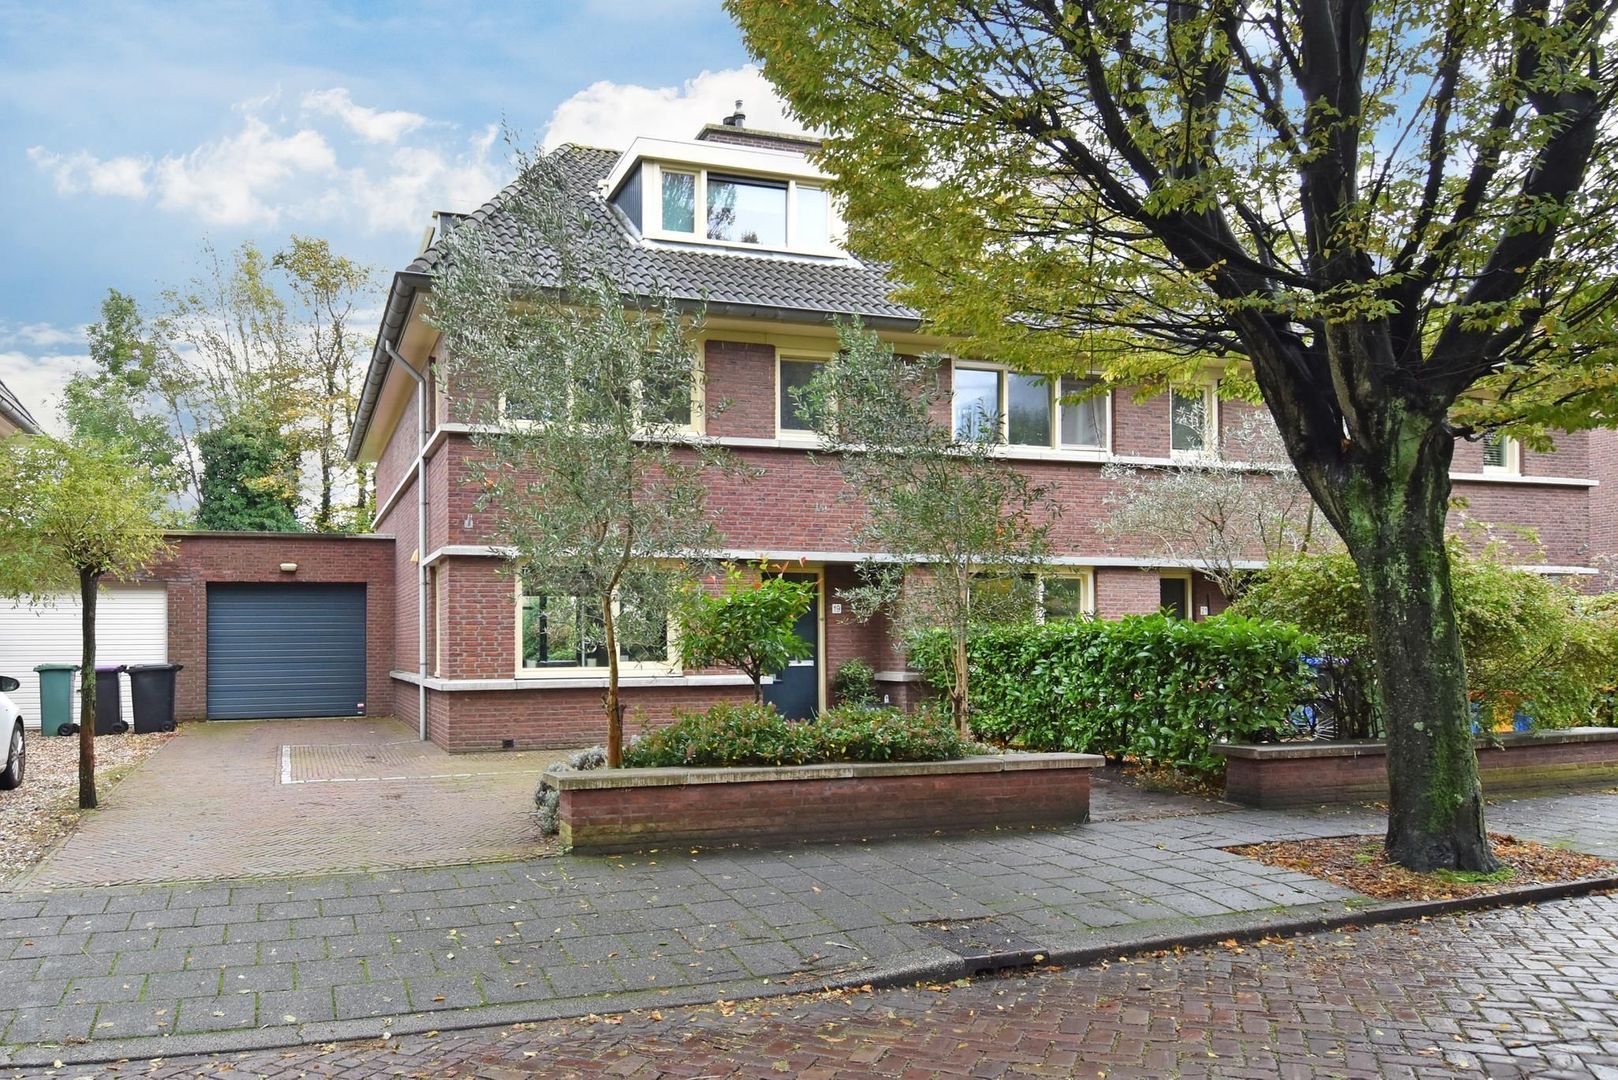 Bekijk foto 1/41 van house in Voorburg